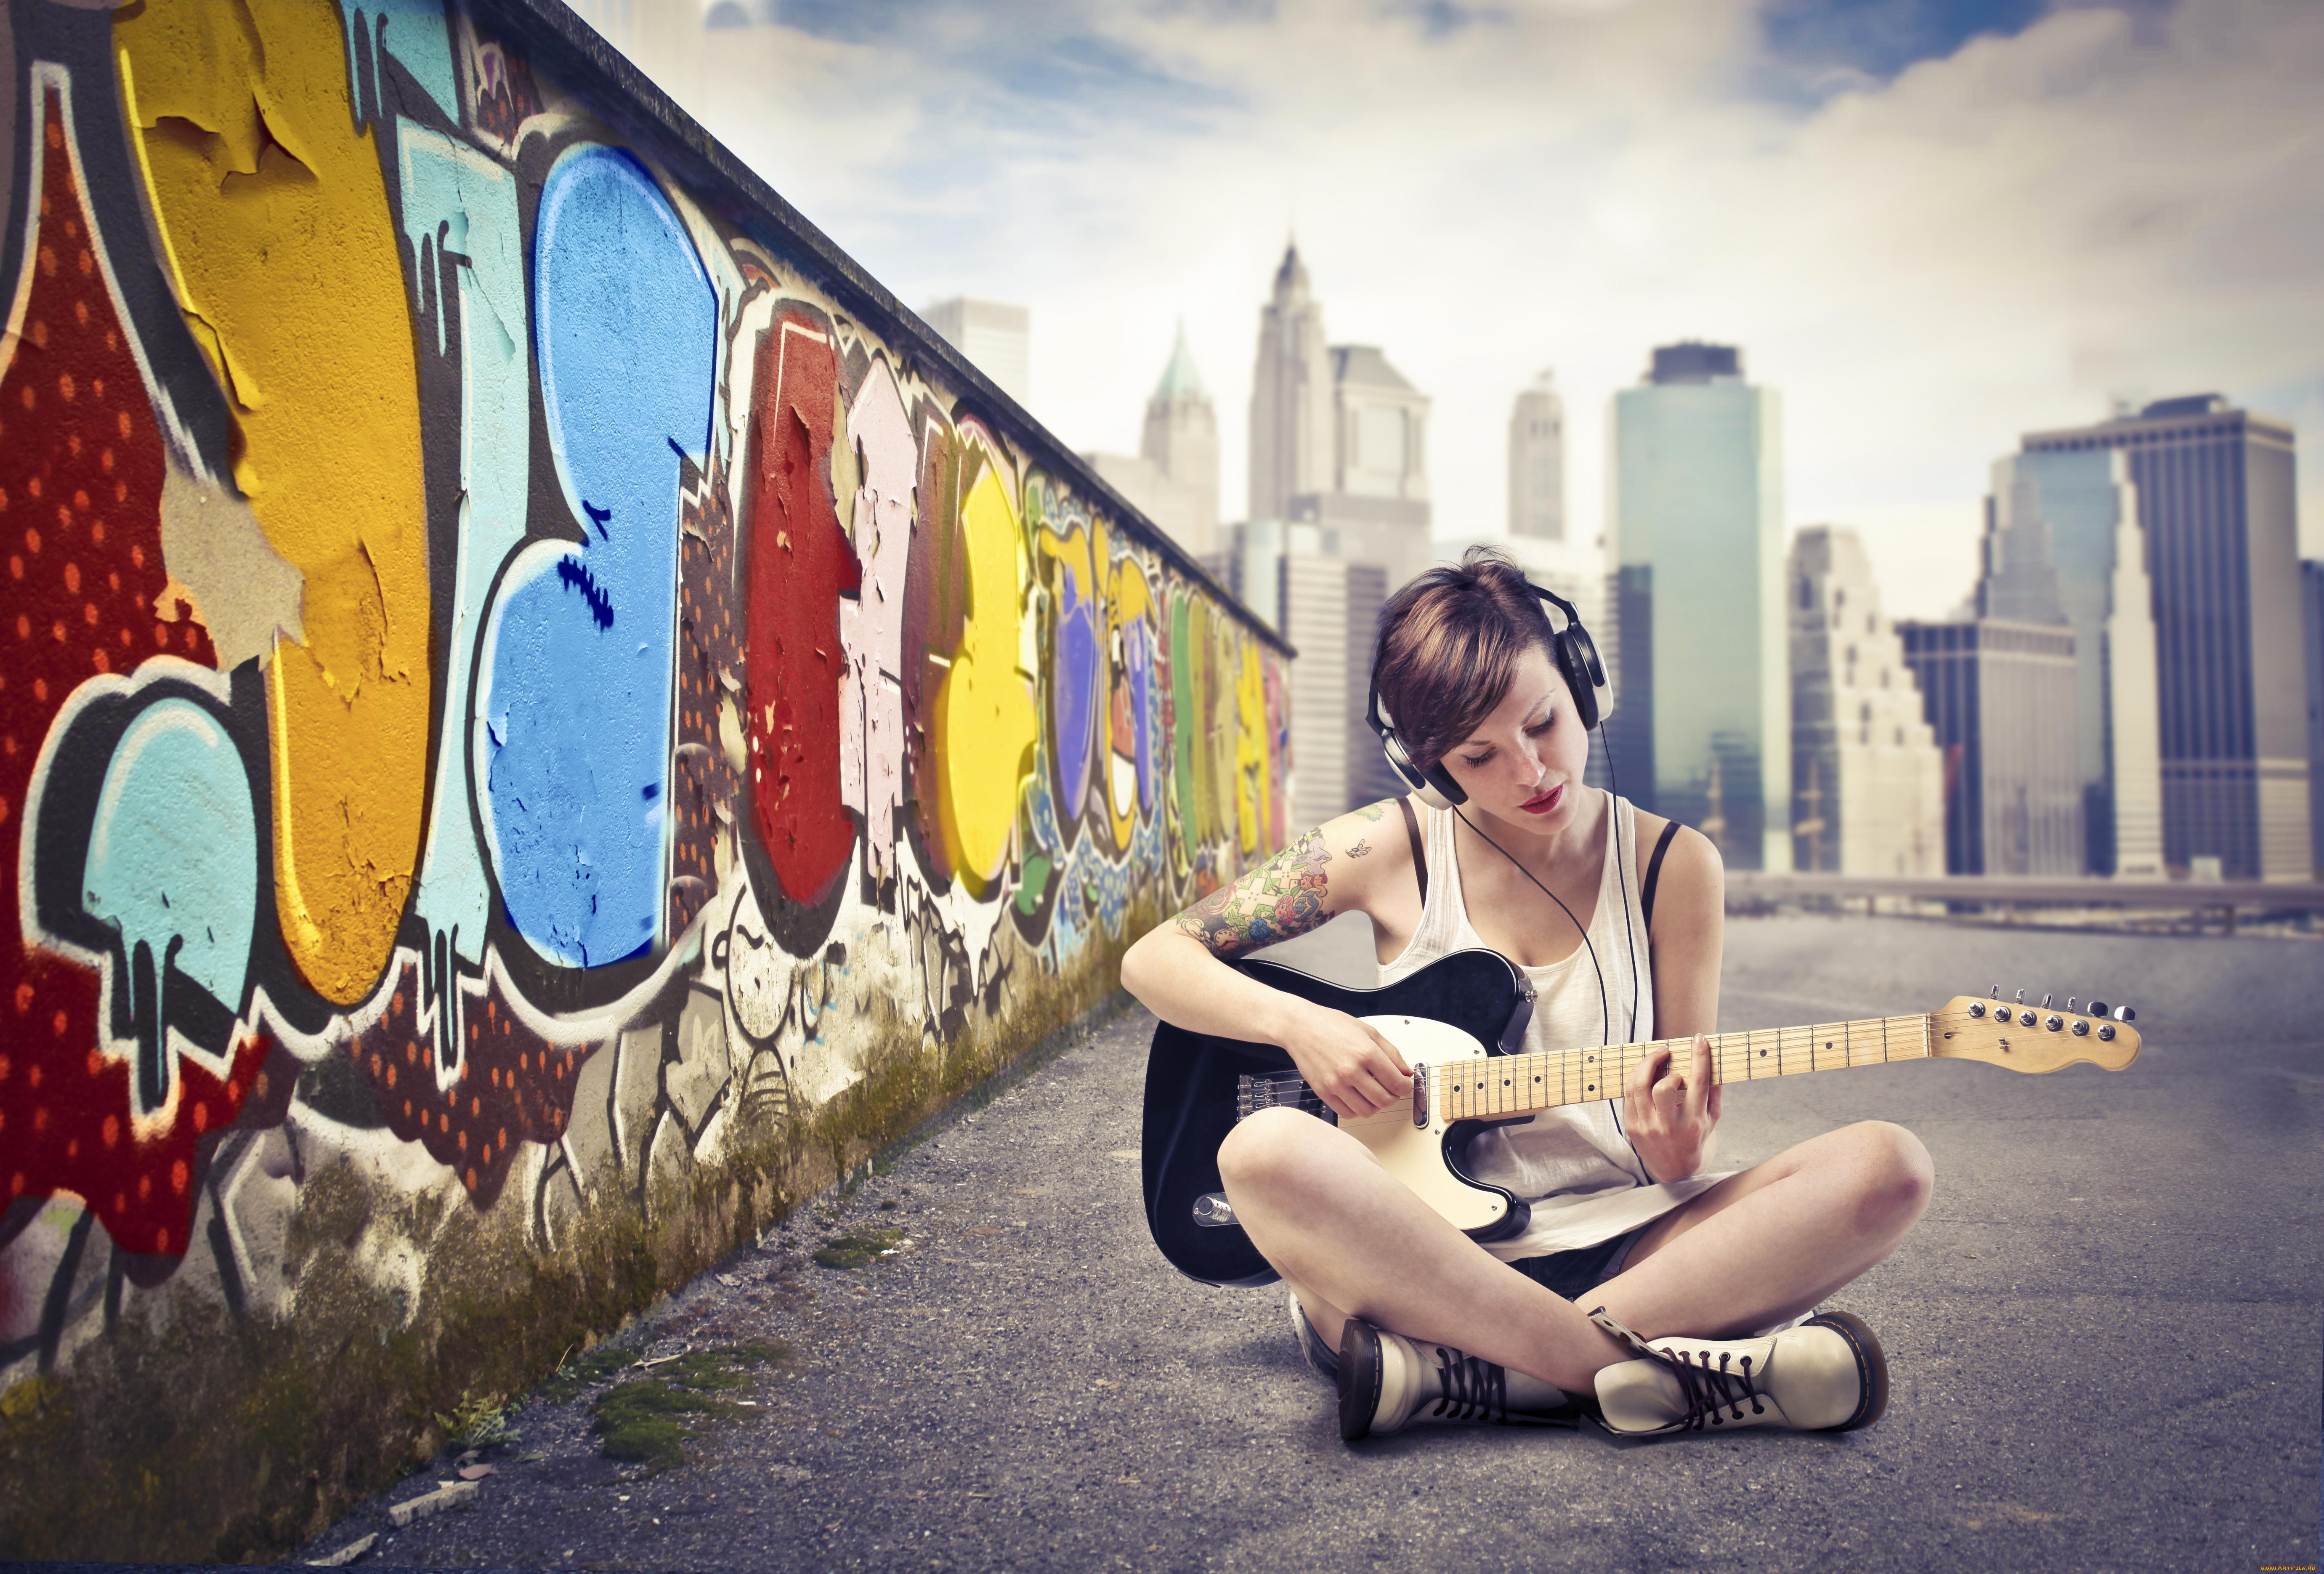 Музыка игра громко. Обои молодежные. Фотосессия с граффити. Граффити девушка. Девушка сидит с гитарой.